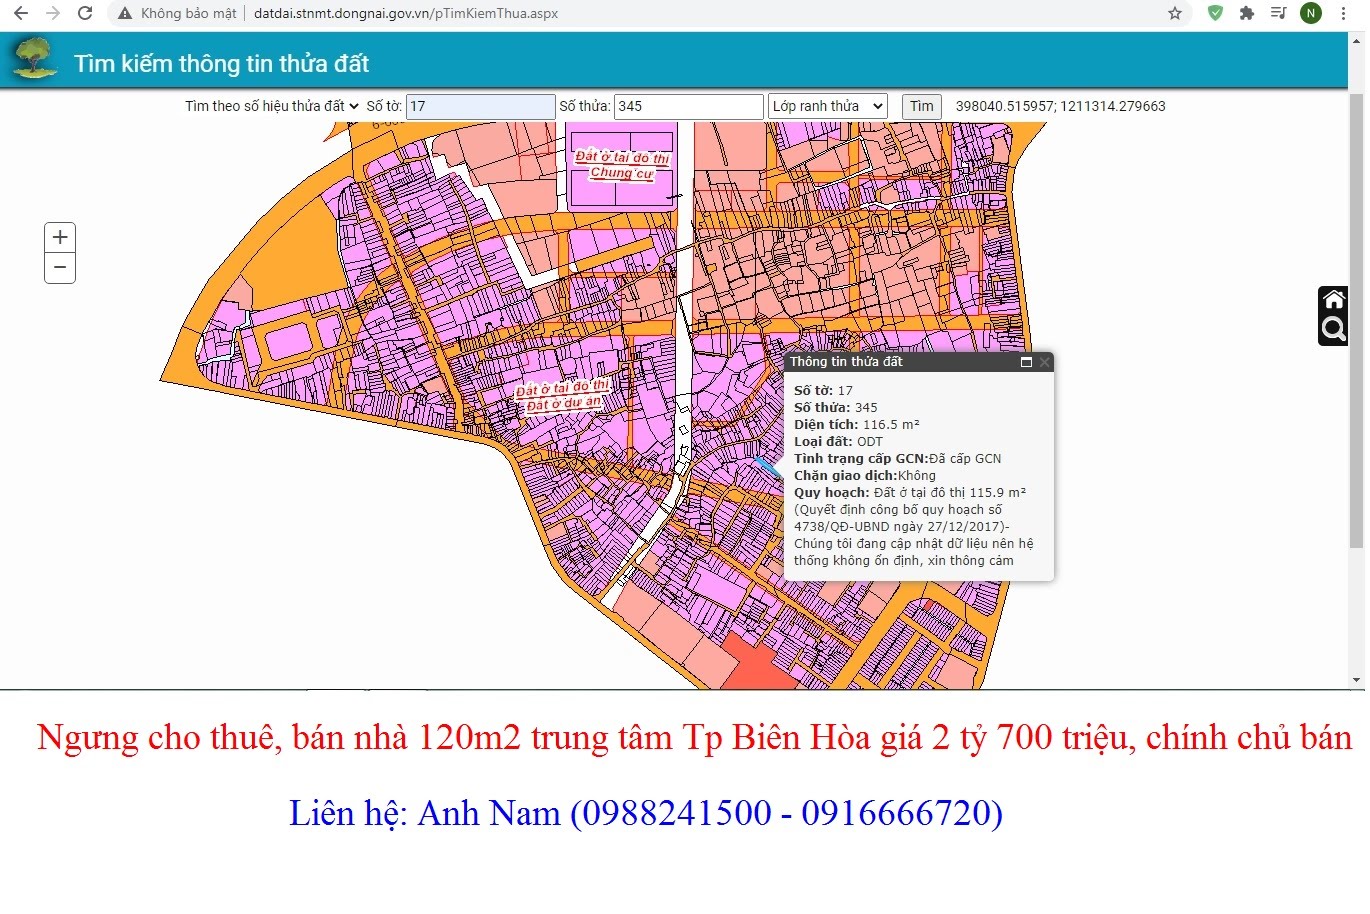 Bán nhà chính chủ trung tâm Tp Biên Hoà, P Quang Vinh giá 23 triệu/m2